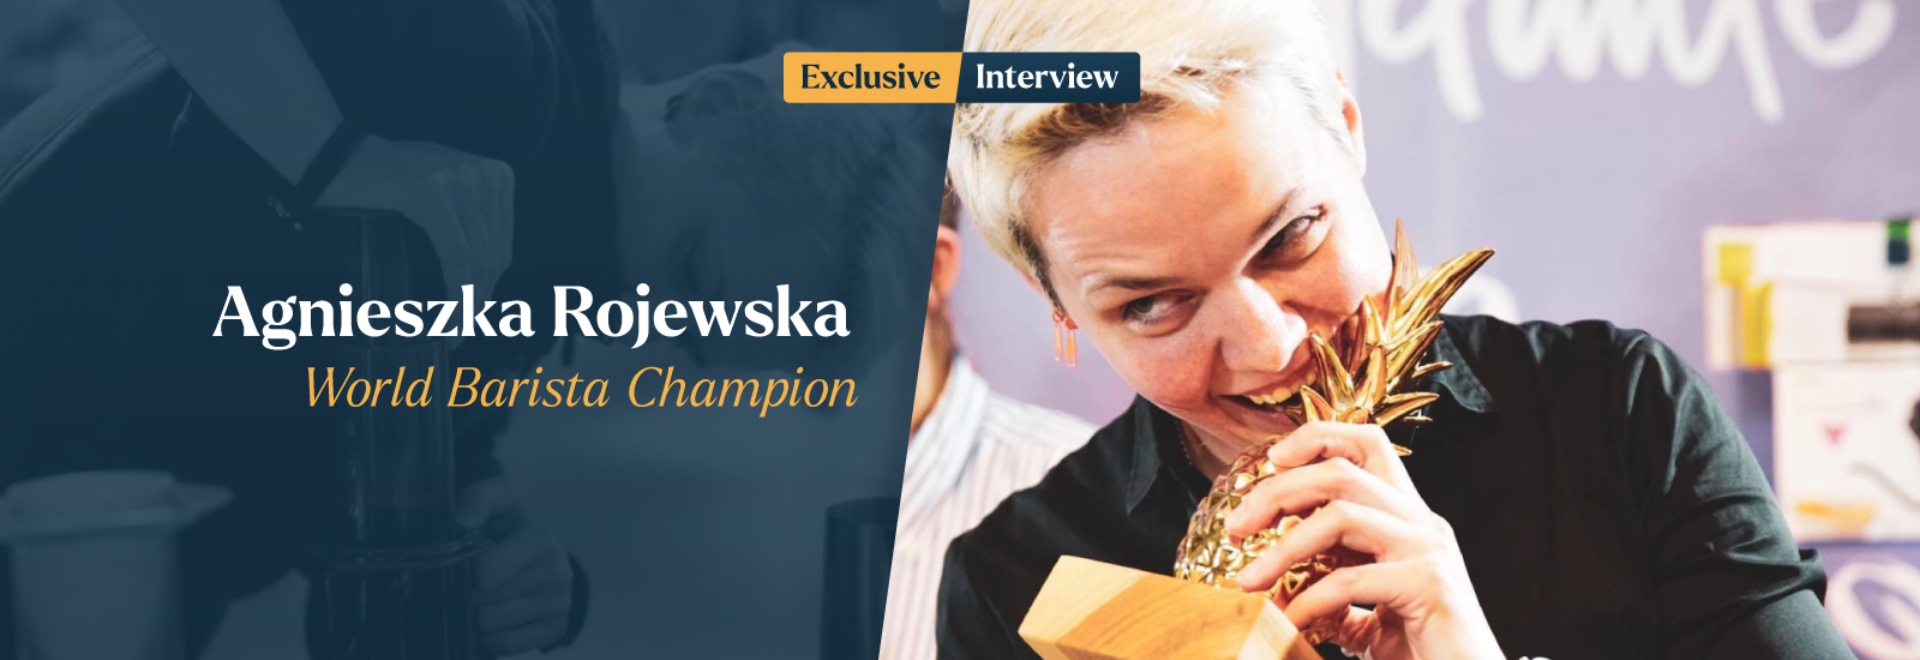 Agnieszka Rojewska interview